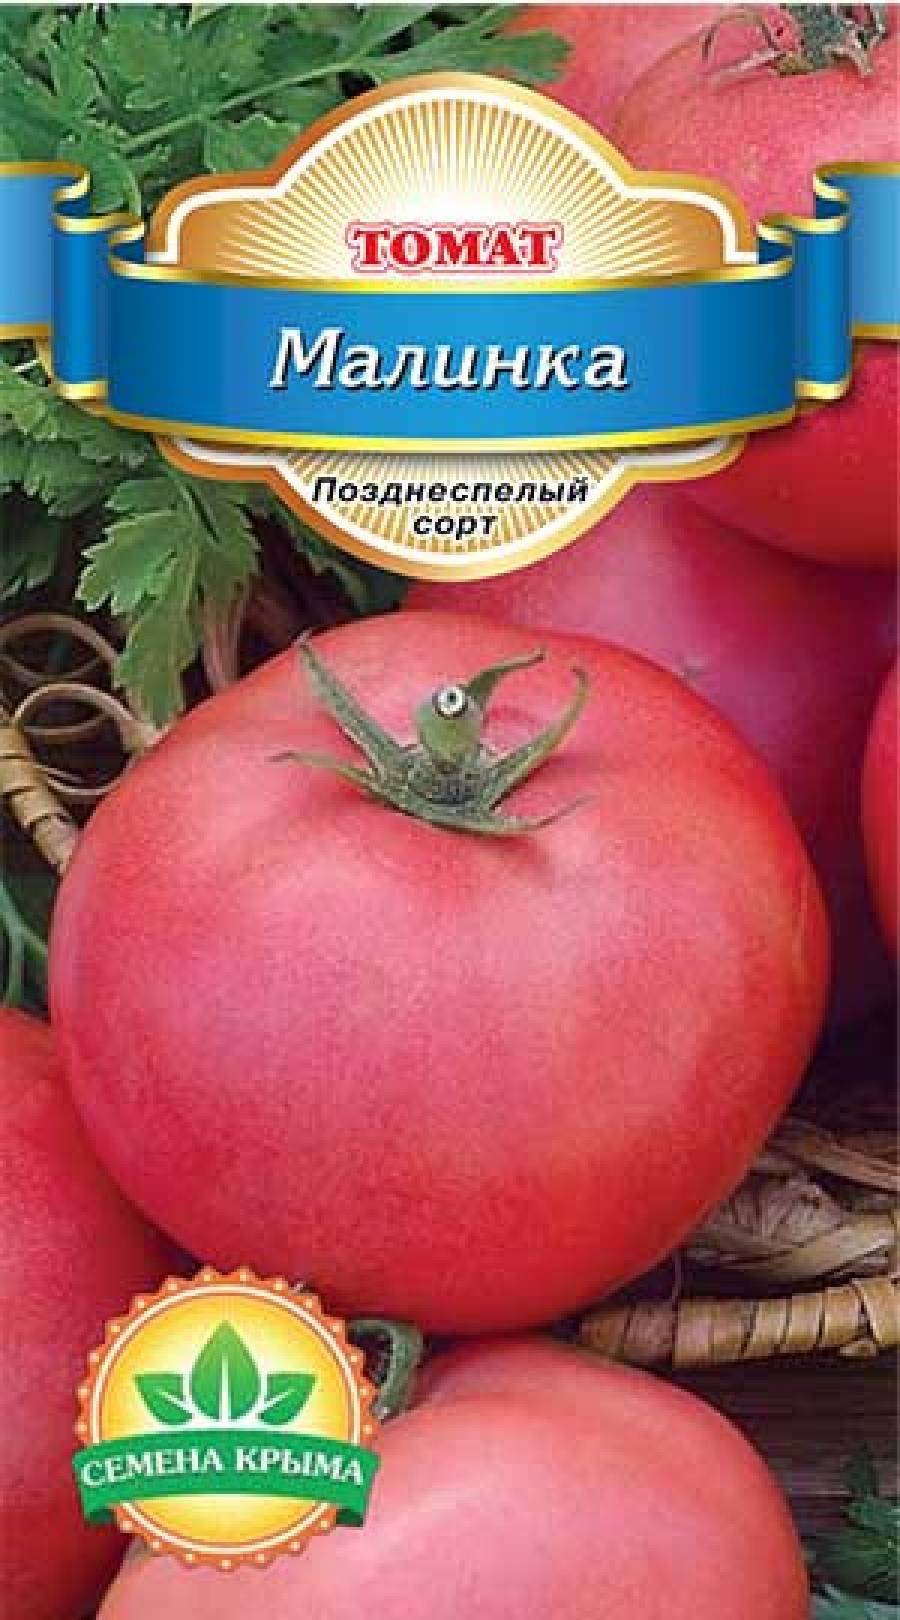 Томат калинка малинка f1: отзывы об урожайности, характеристика и описание сорта, фото семян сады россии